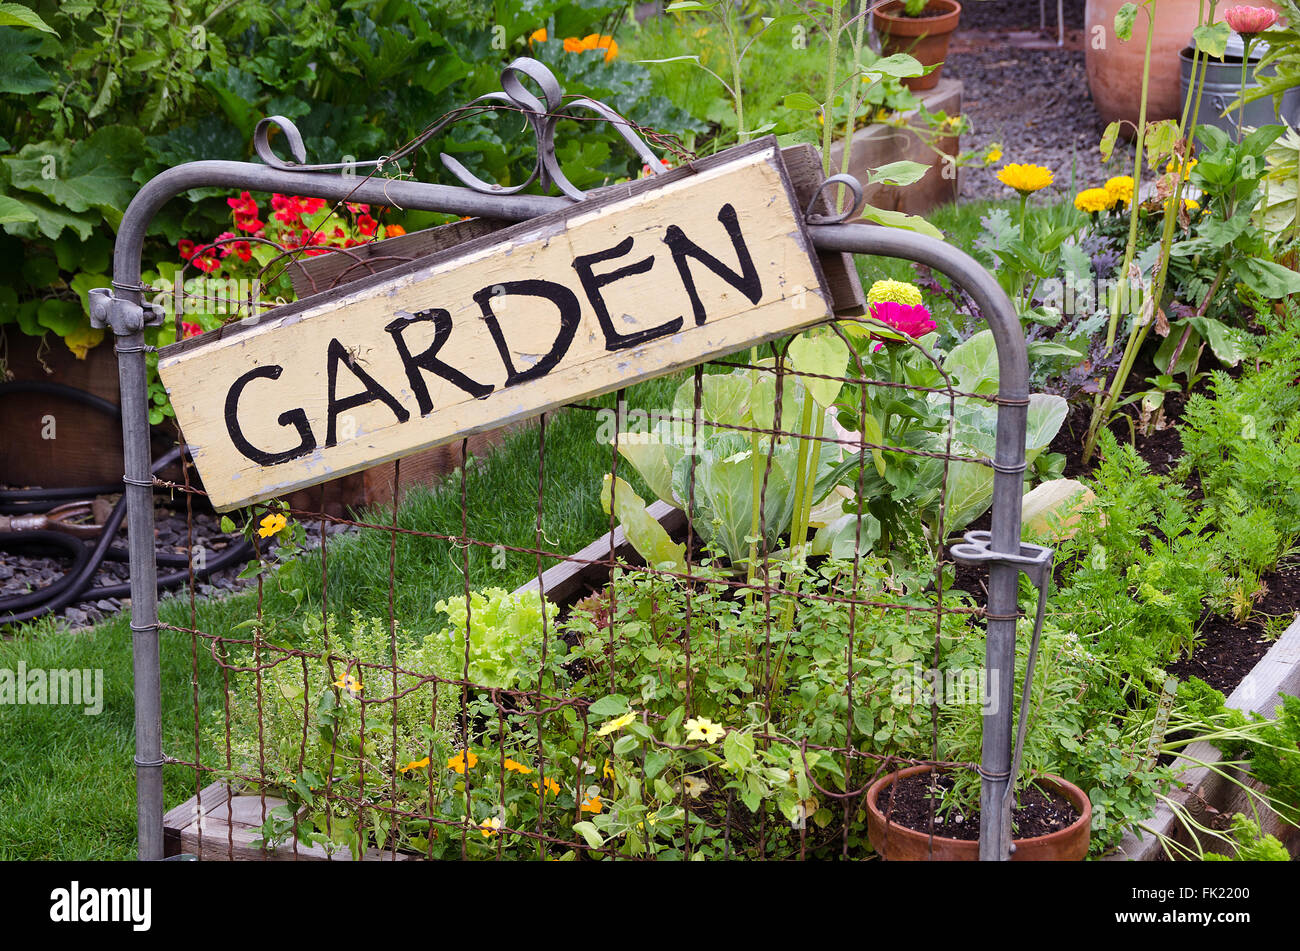 Zwei Garten Hochbeete gefüllt mit Blumen und Gemüse sind in kleinen Hinterhof gelegen. Eine schöne rustikale Schild hängen jaunti Stockfoto